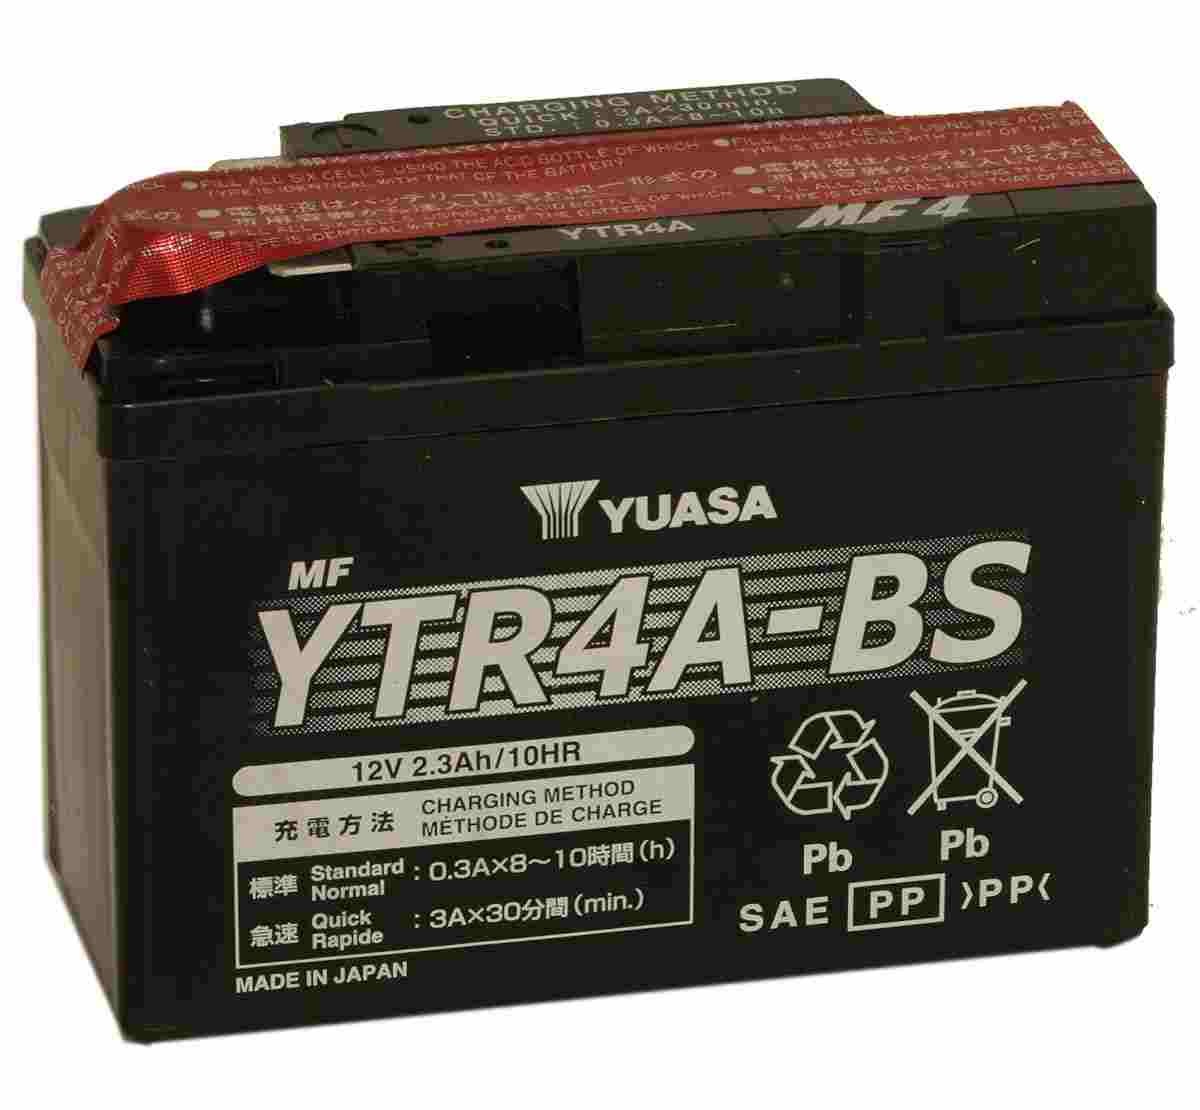 Bateria para moto o ciclomotor marca YUASA modelo YTR4A-BS de 12v 2.3Ah